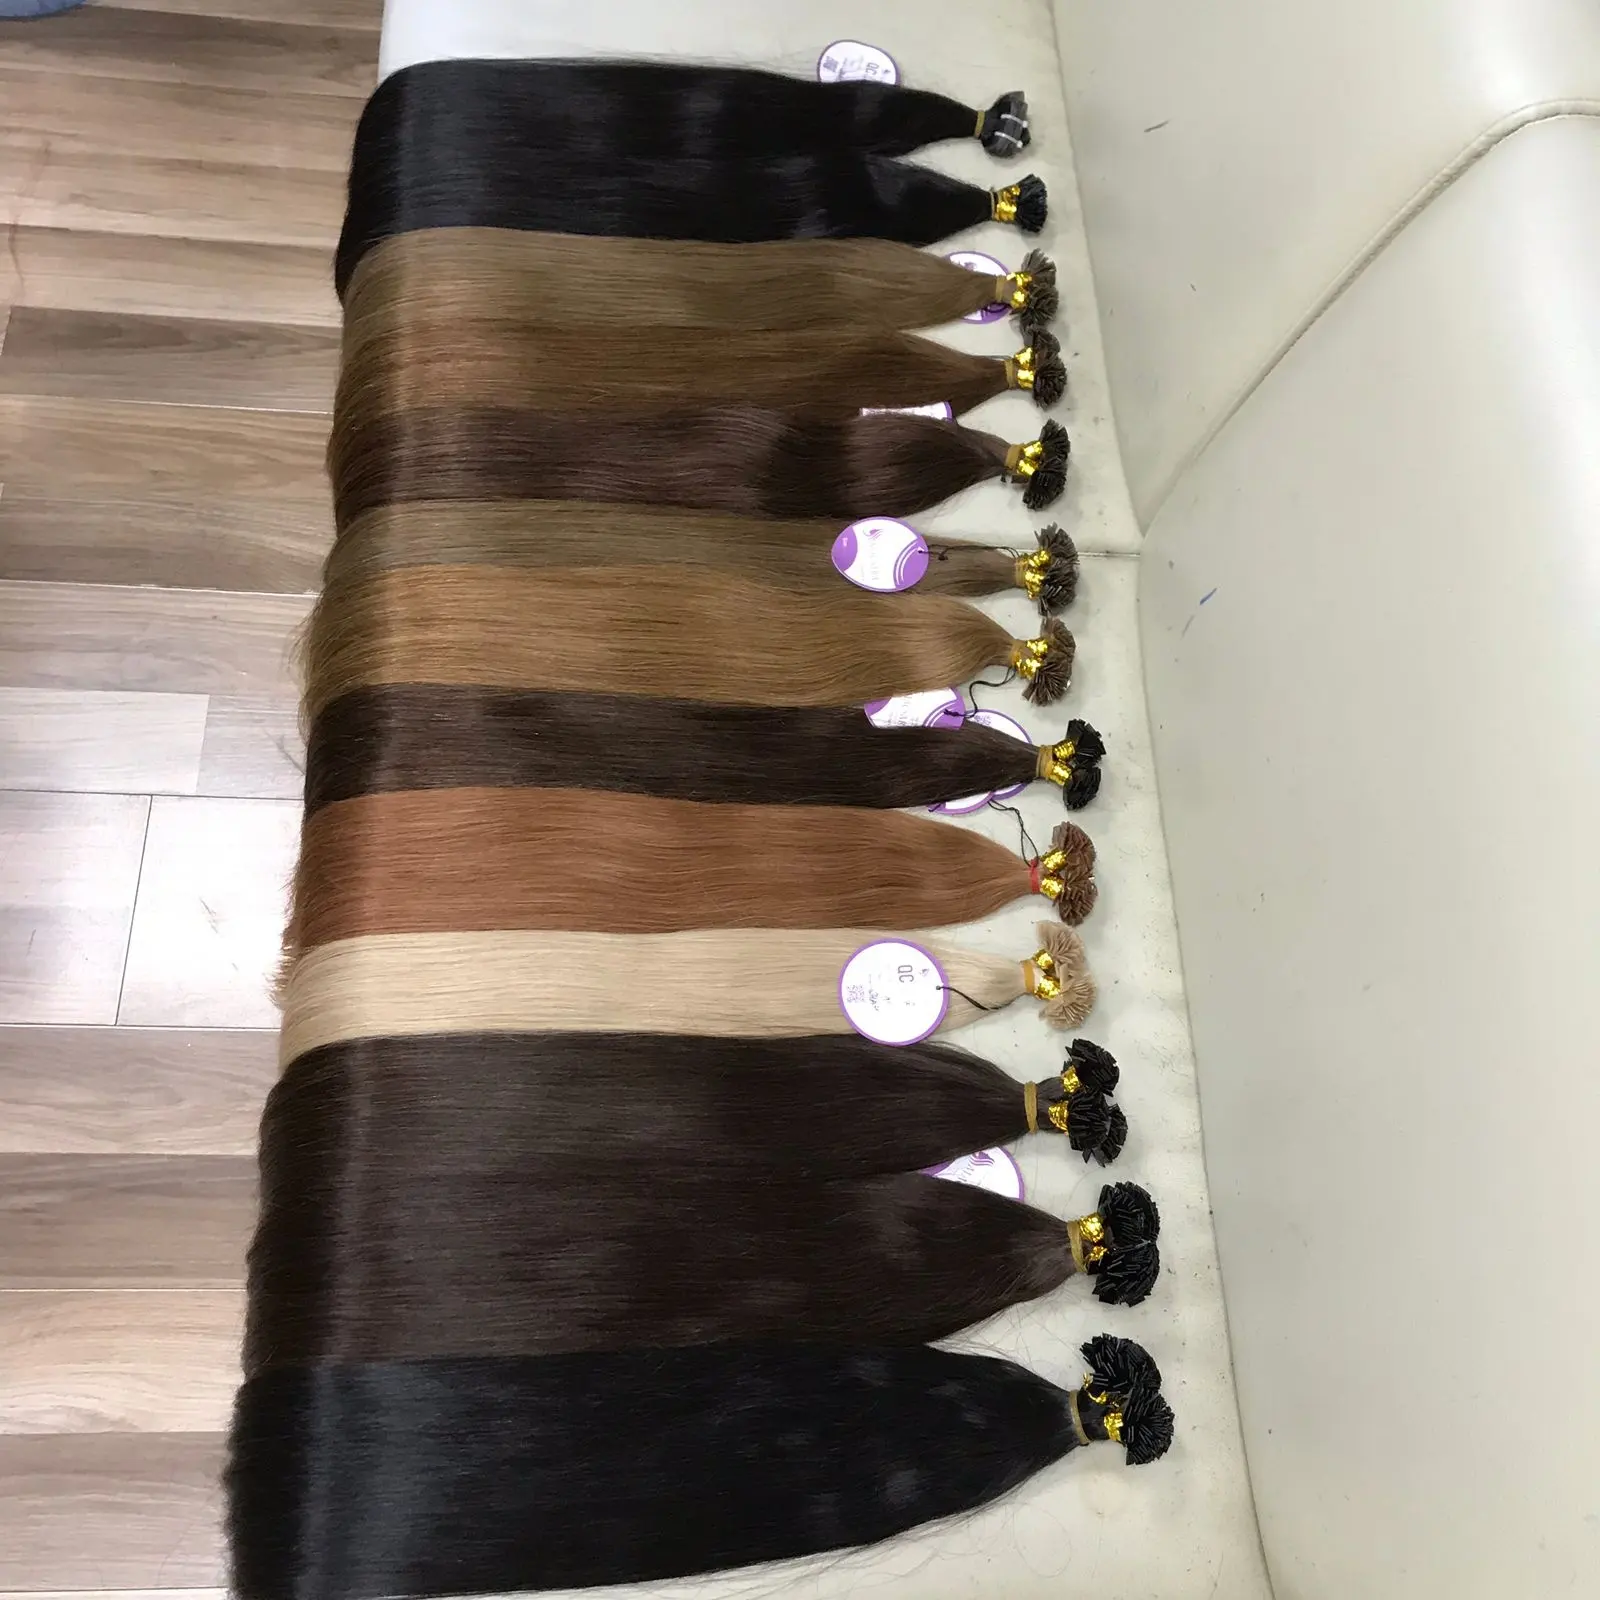 Heißer Verkauf Russische Echthaar verlängerung Flache Spitze Haar Maschine gemacht Remy Pre Bonded Großhandel Double Drawn Remy